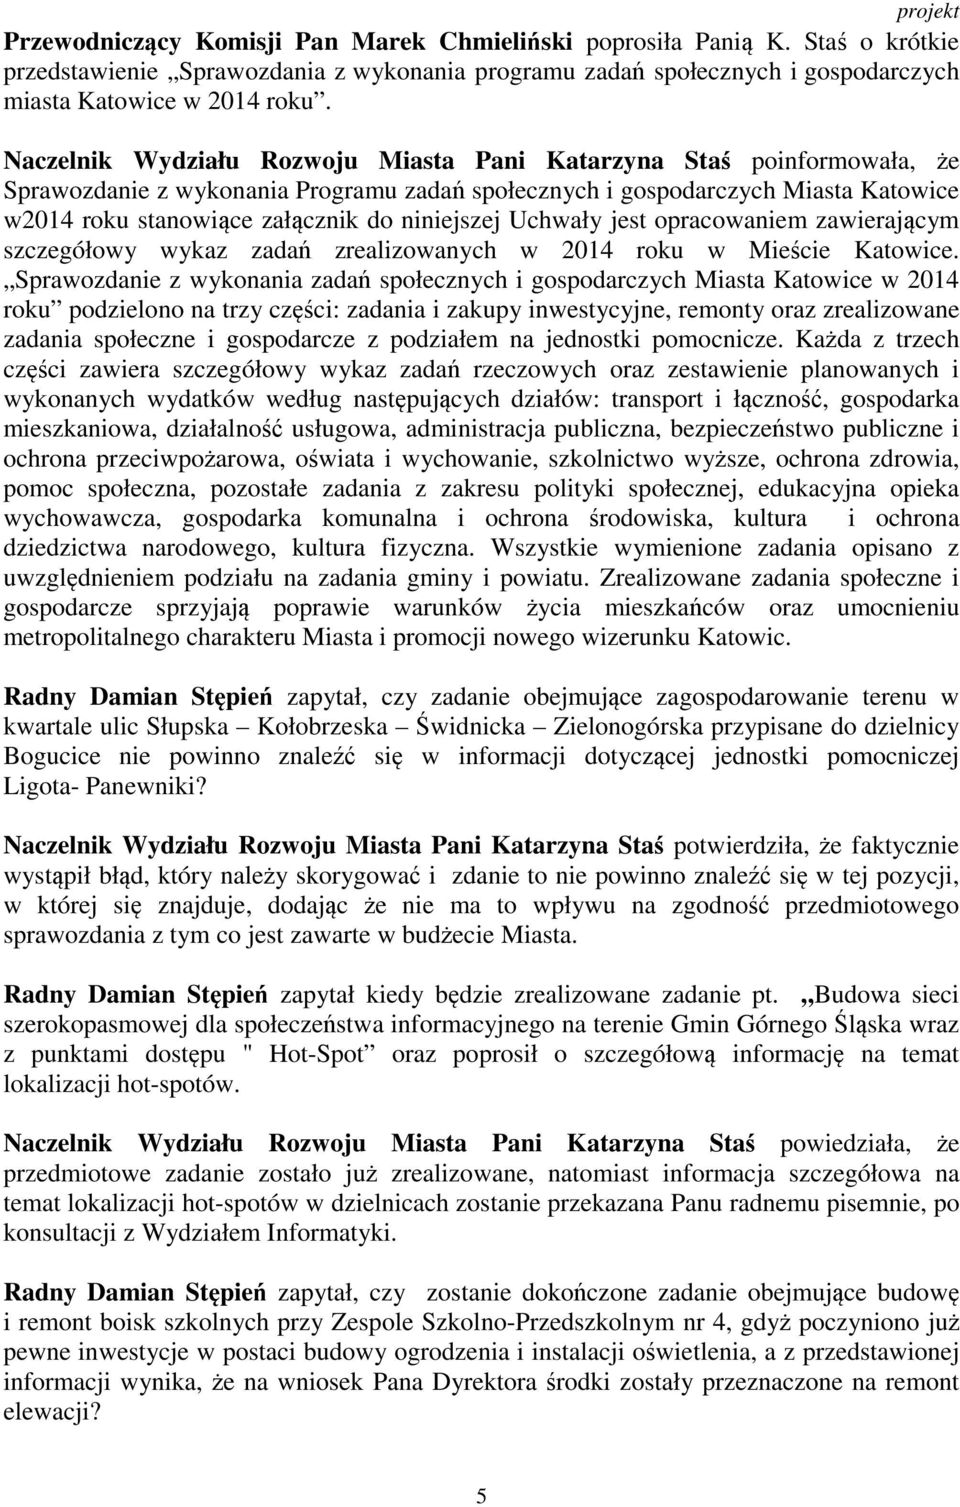 niniejszej Uchwały jest opracowaniem zawierającym szczegółowy wykaz zadań zrealizowanych w 2014 roku w Mieście Katowice.